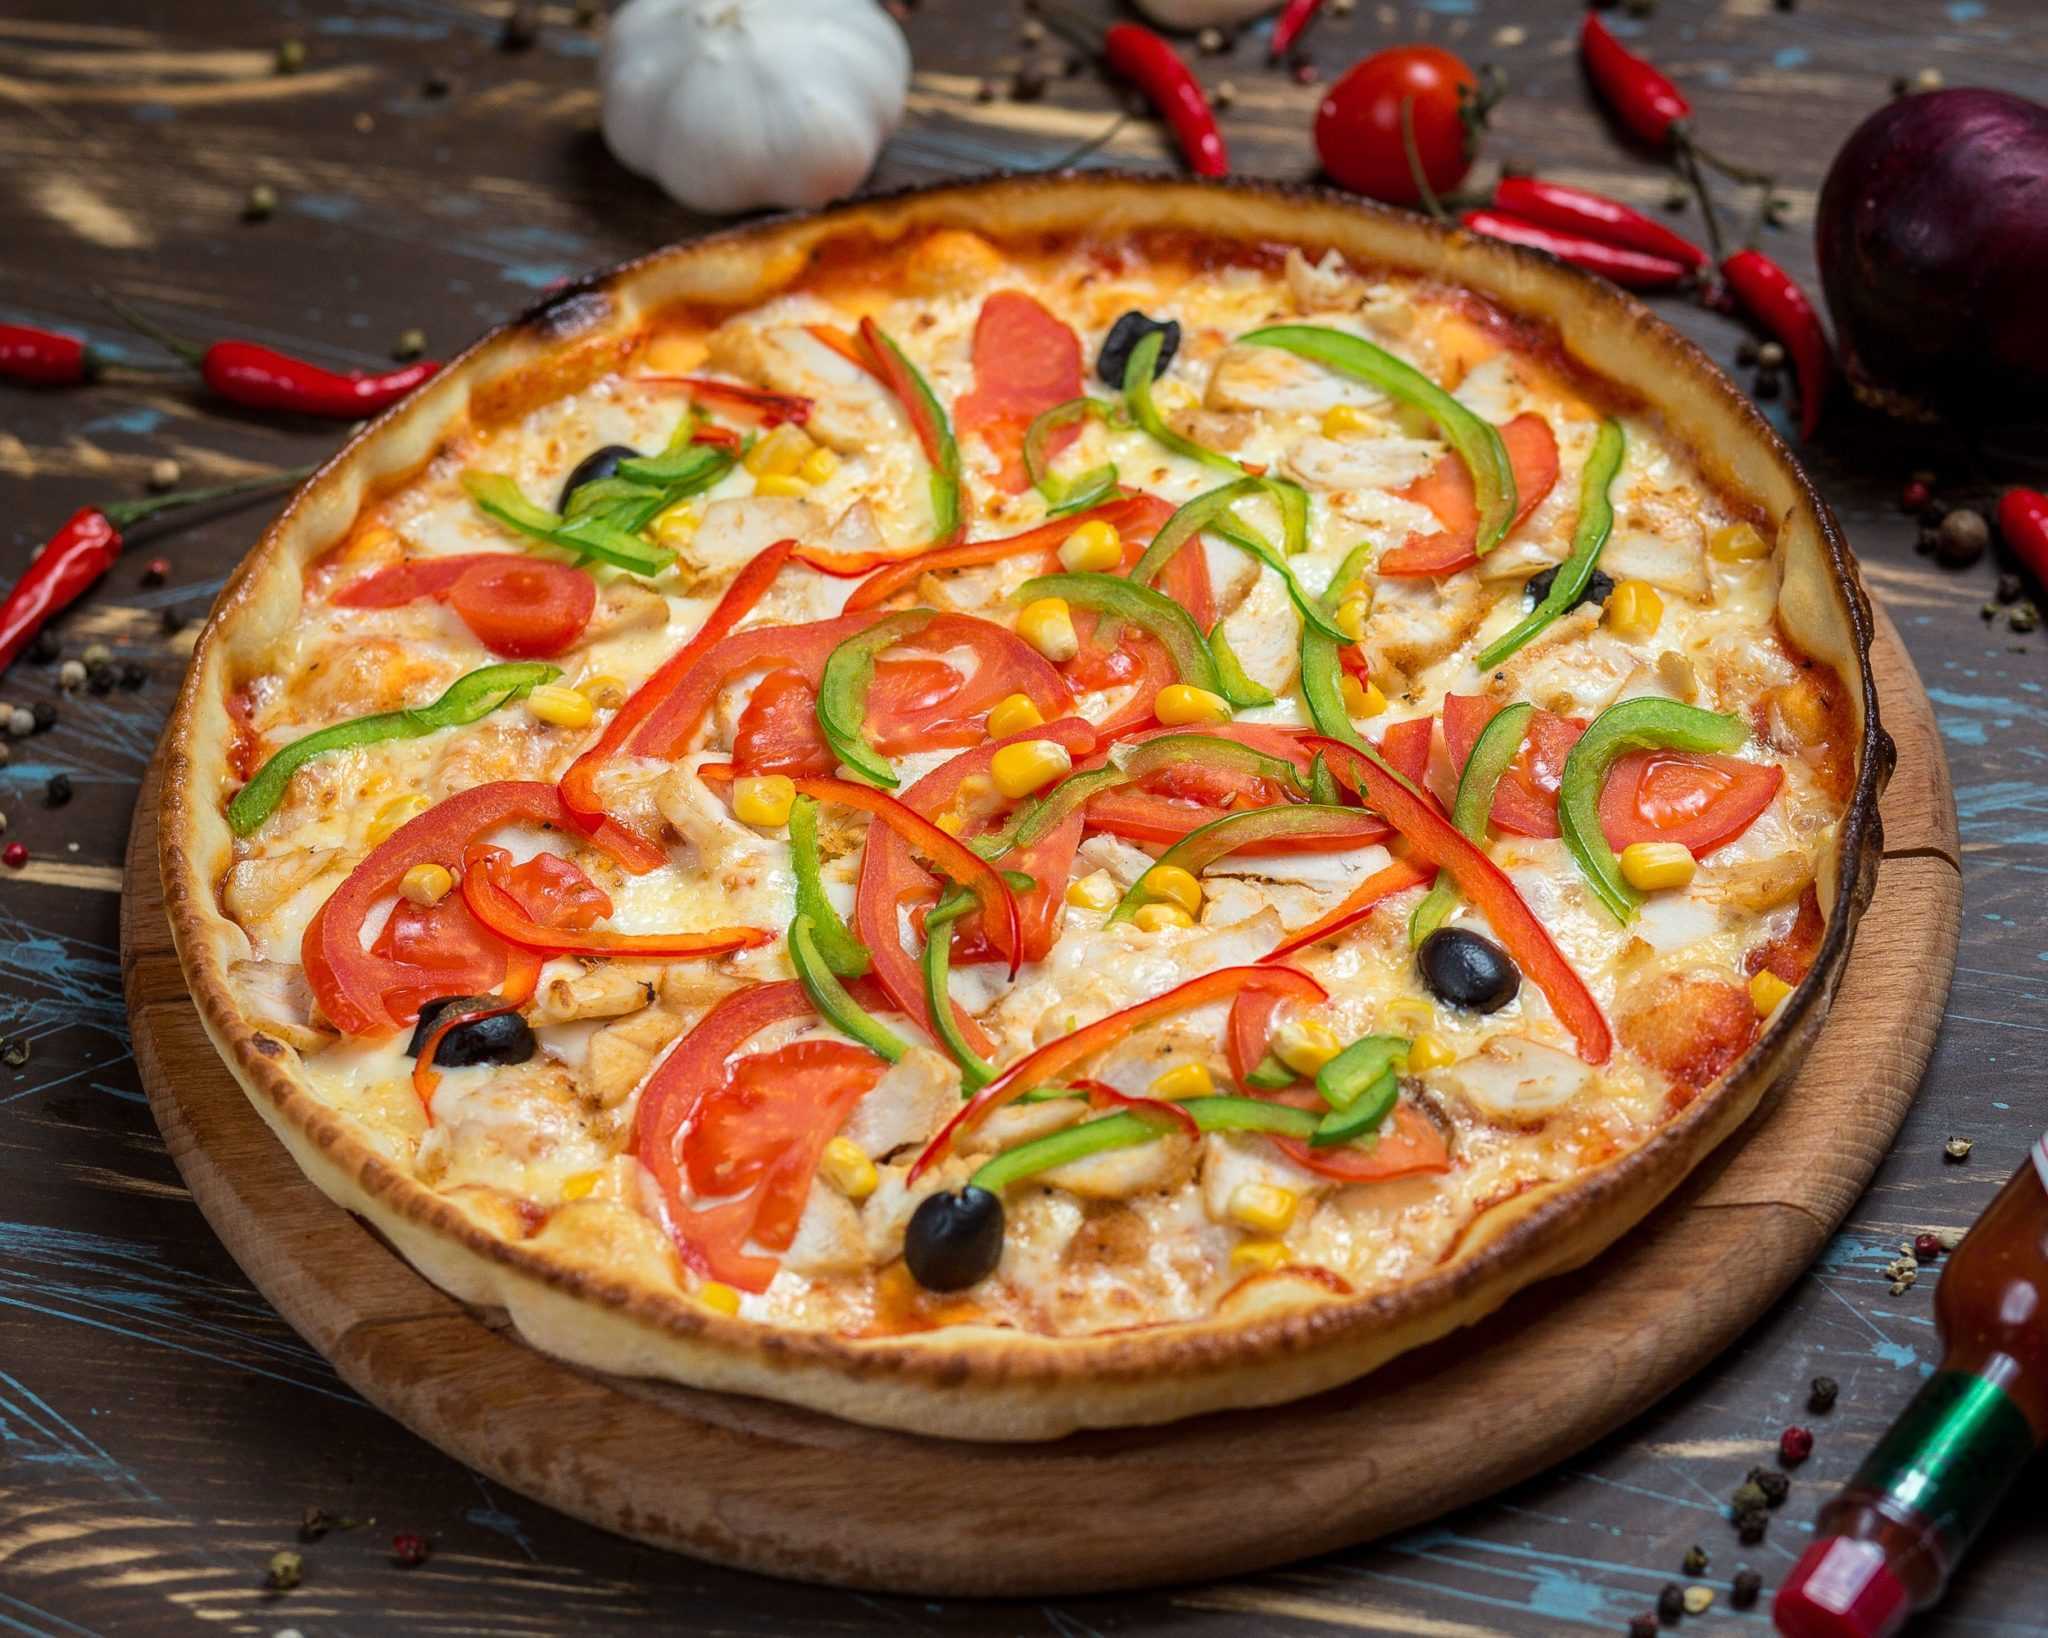 Веганские рецепты пиццы: Маргарита, пицца с баклажанами, с томатами и веганским сыром, кокосовая пицца, тесто глютен-фри Секреты и тонкости приготовления